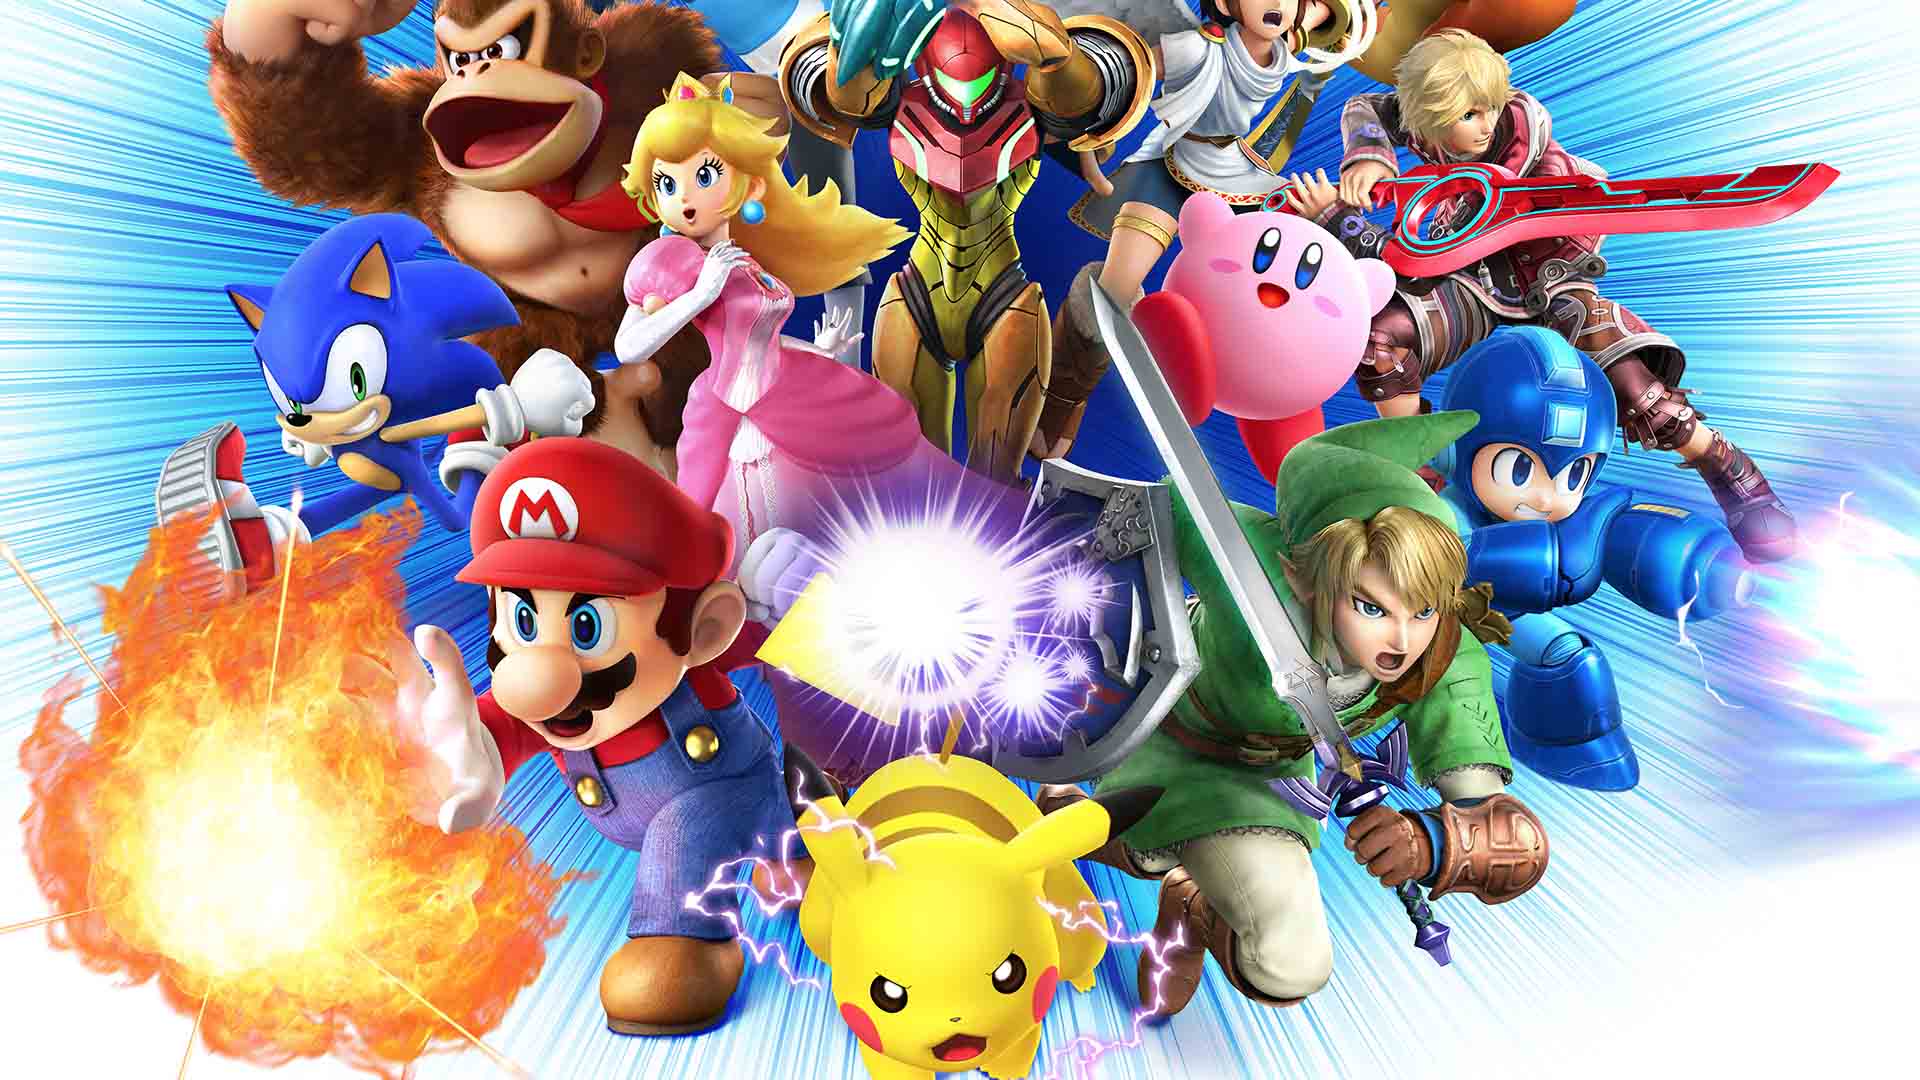 Super smash bros игра. Супер смэш БРОС персонажи. Nintendo Smash Bros.. Super Smash Bros for Wii u. Super Smash Bros. Ultimate (2018).